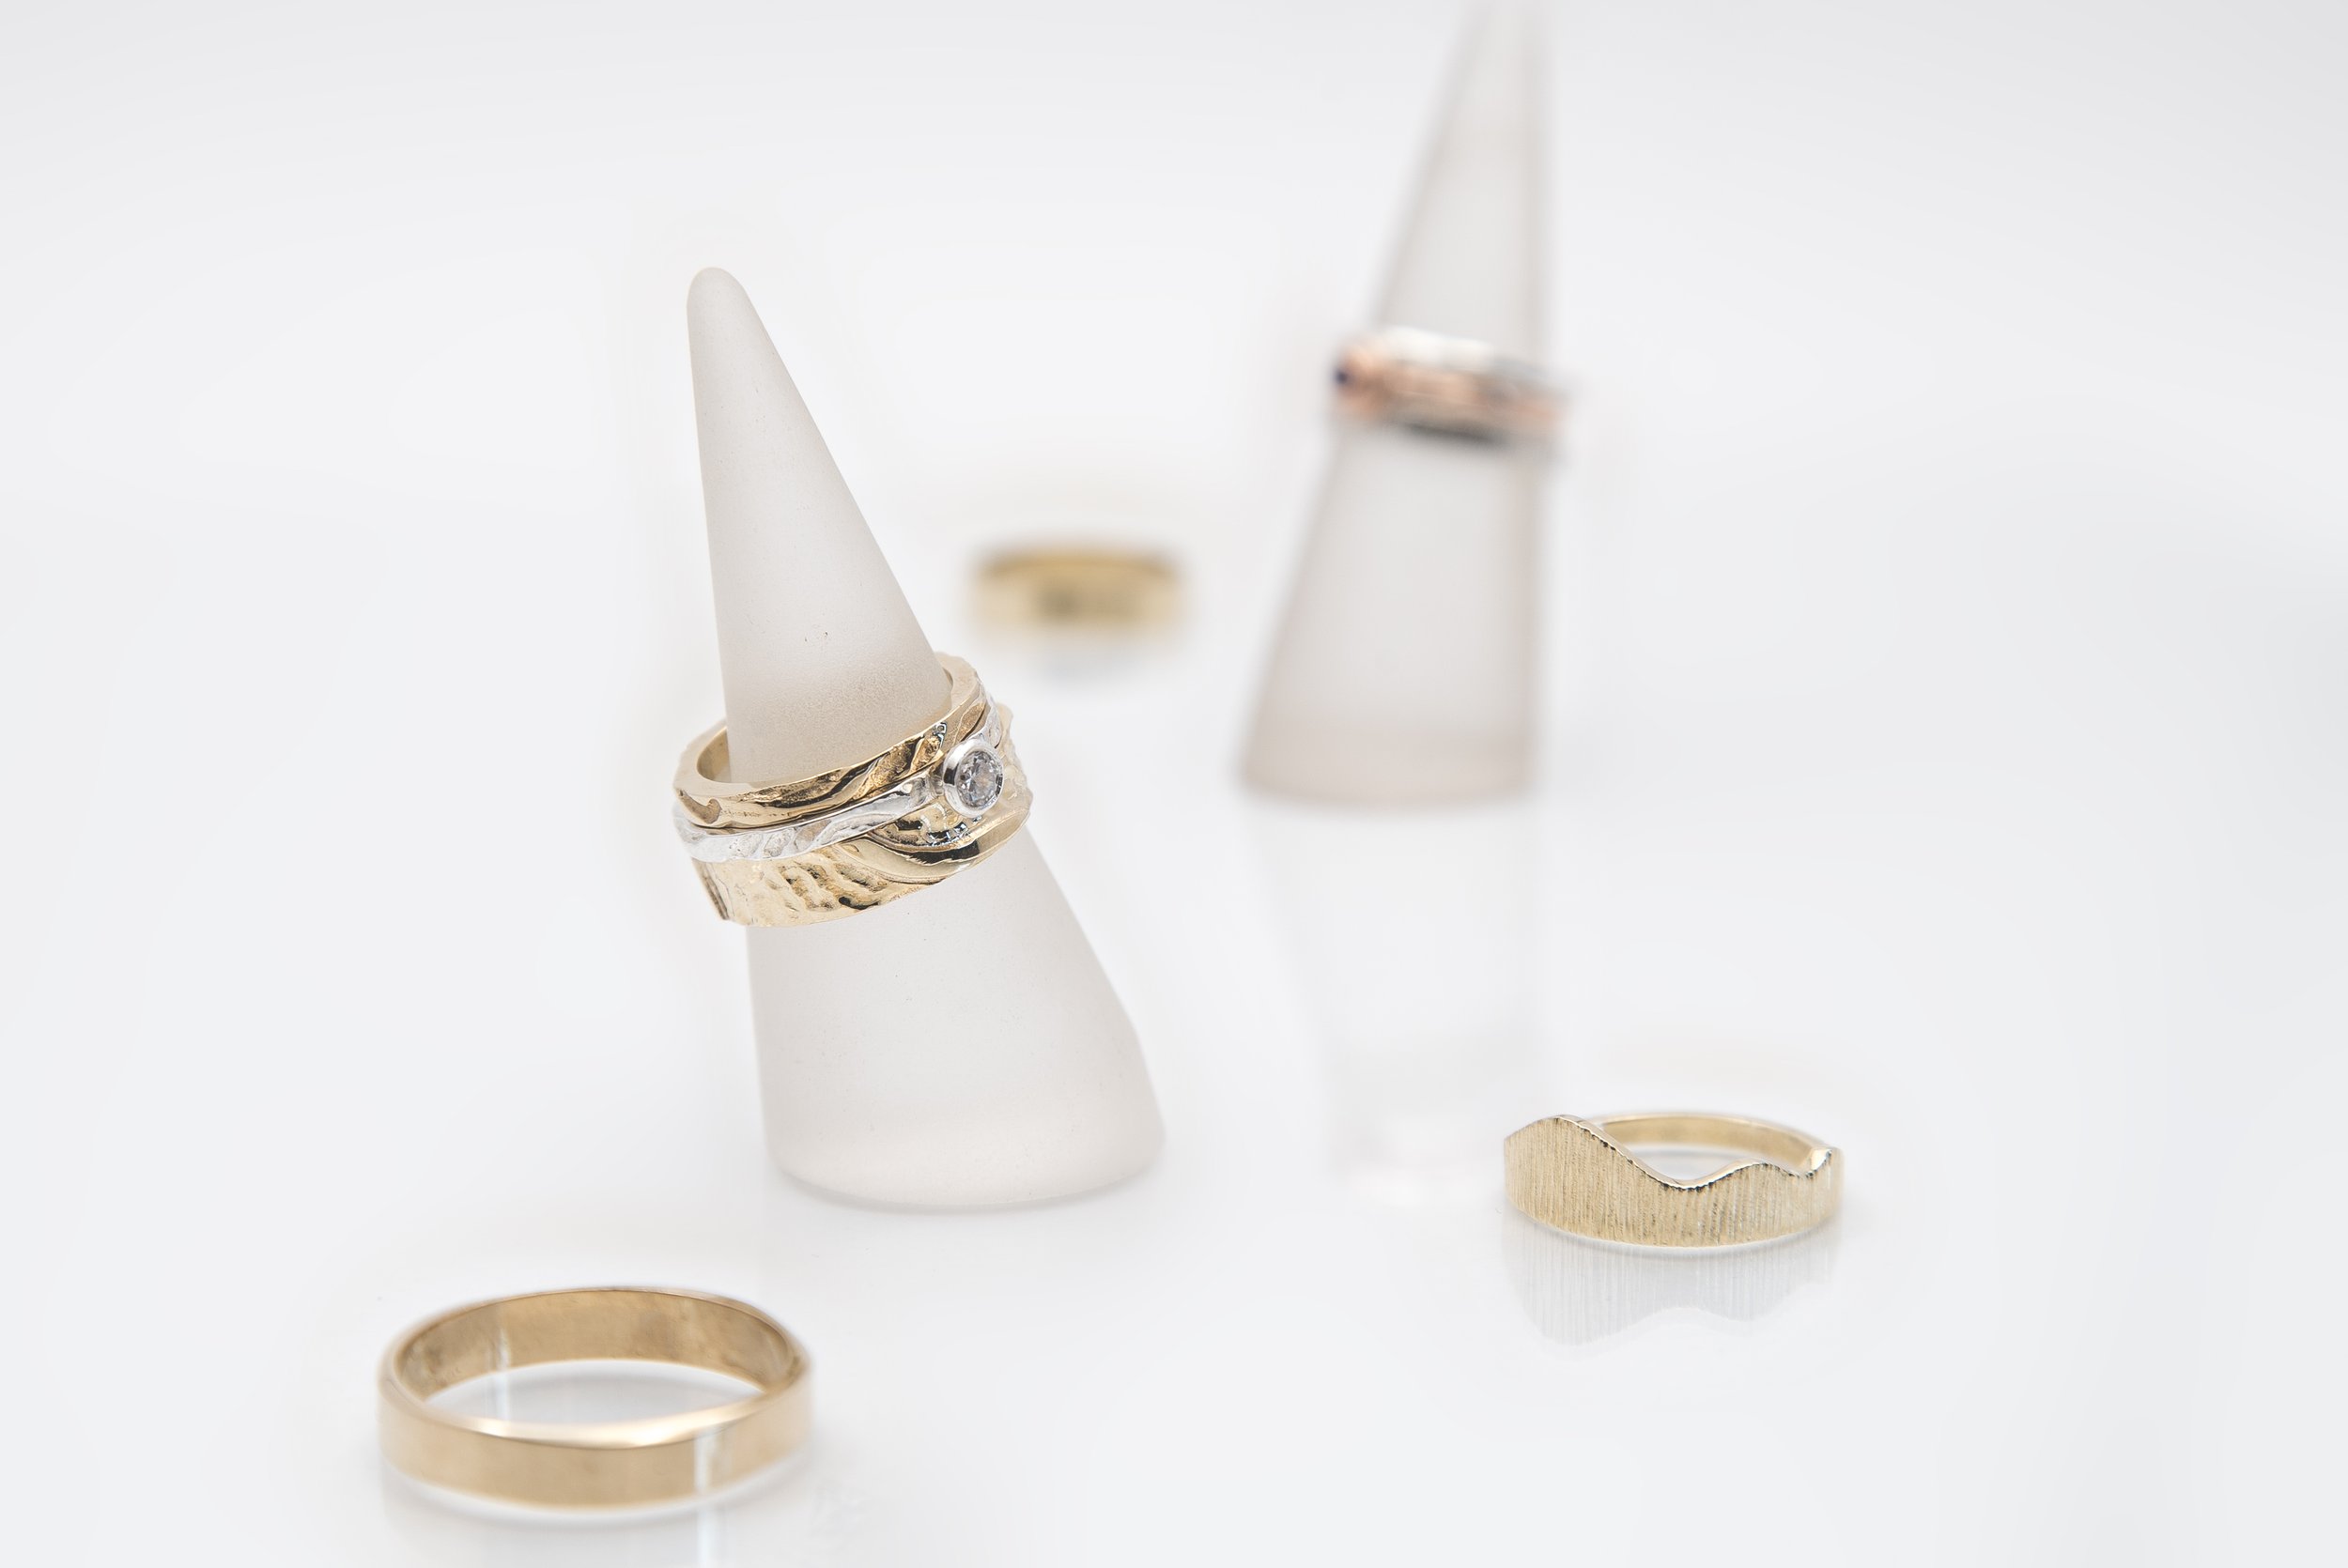 Medley of designer rings from Martina Hamilton